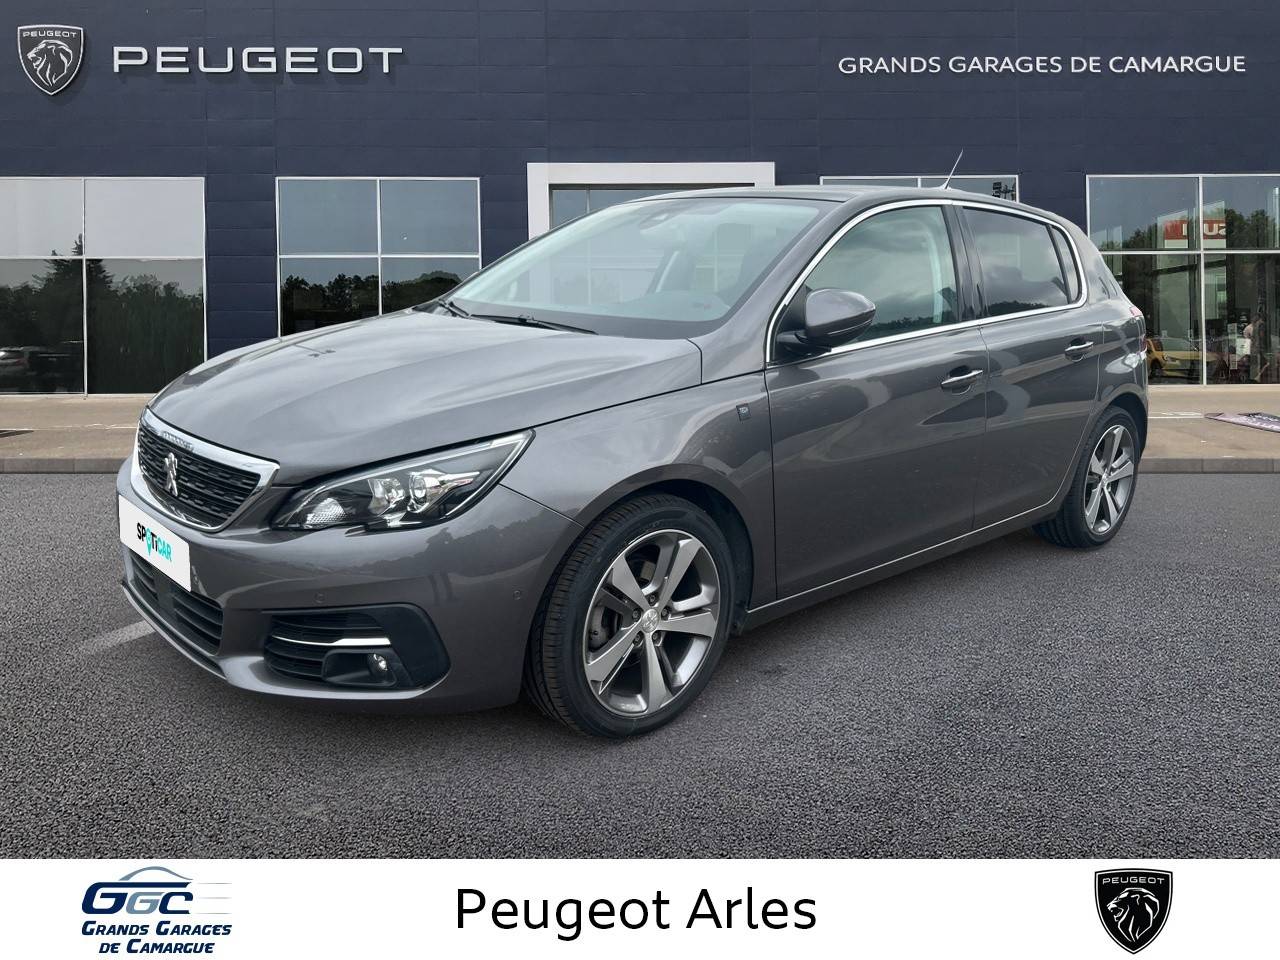 PEUGEOT 308 | 308 PureTech 130ch S&S EAT8 occasion - Peugeot Arles